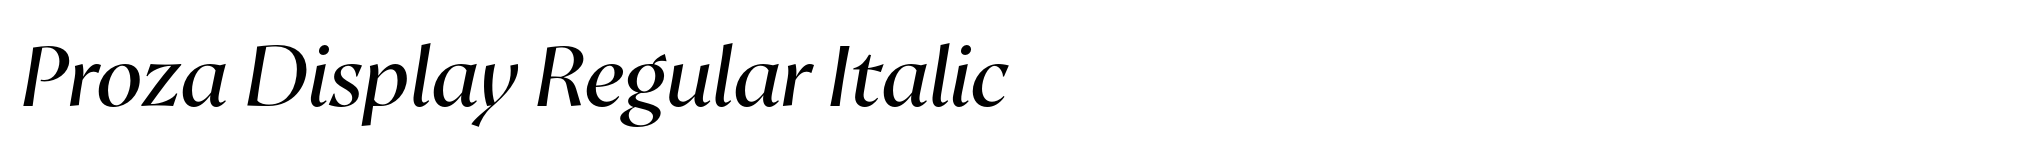 Proza Display Regular Italic image